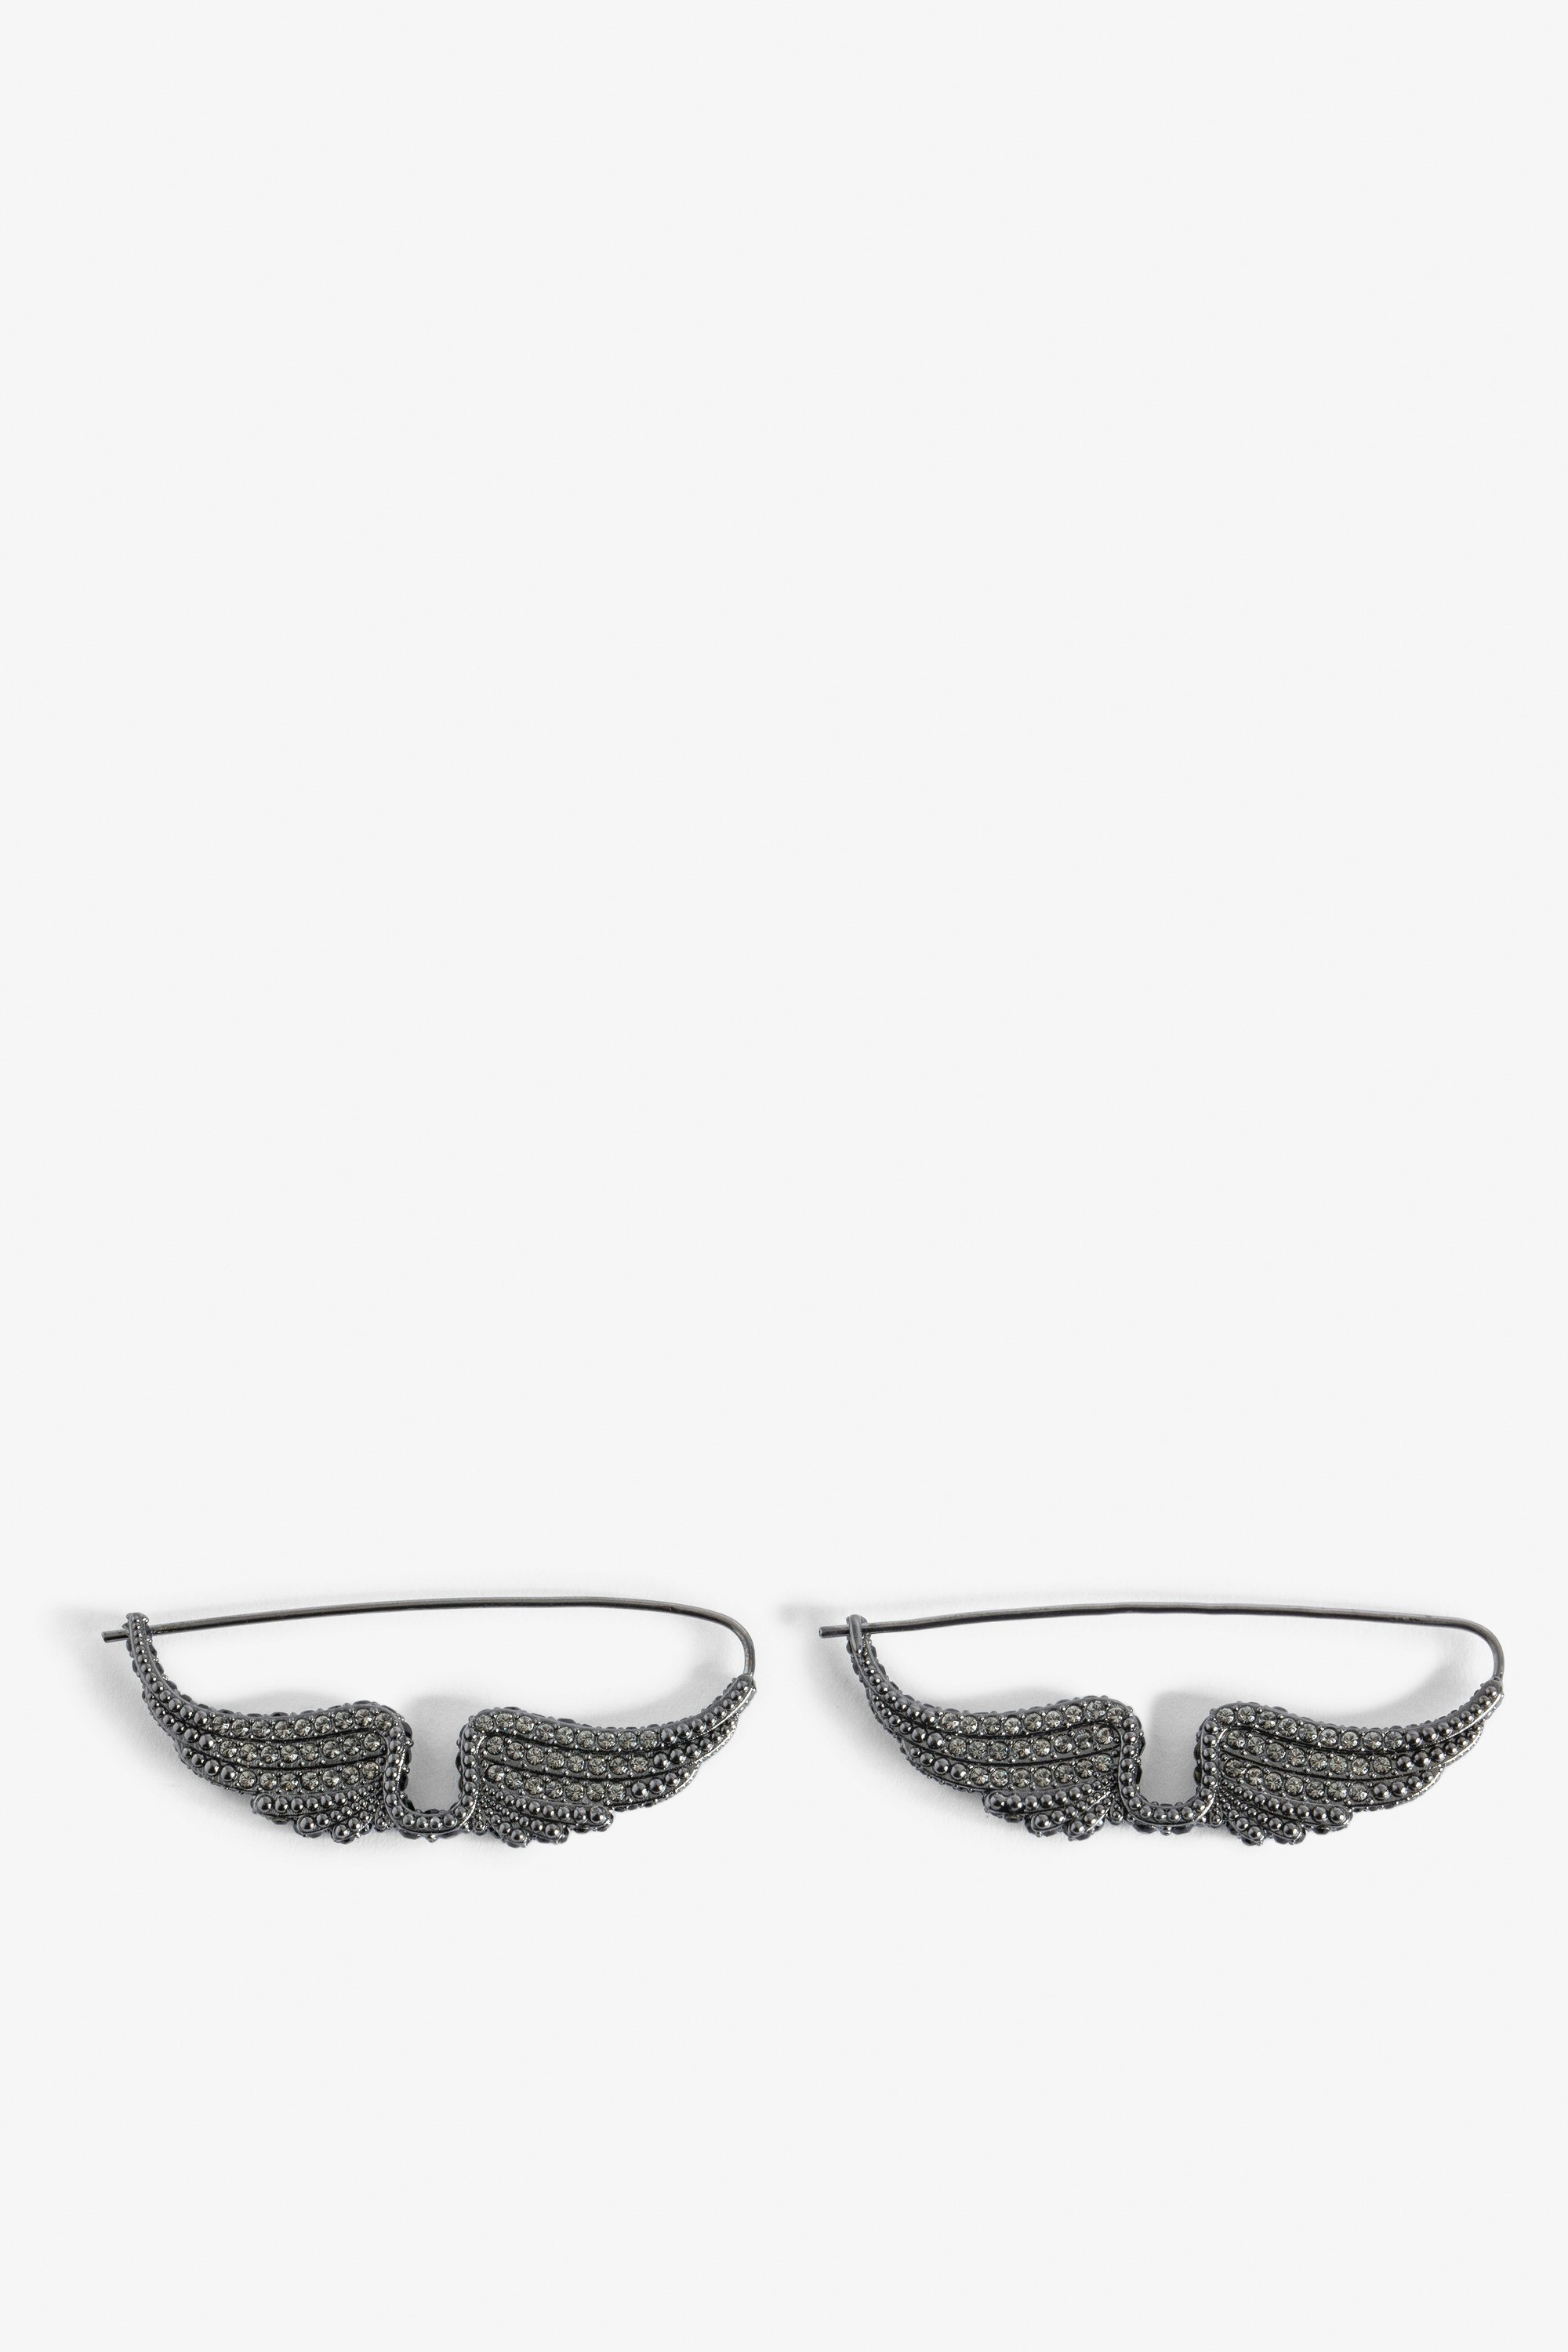 Rock Piercing Earrings - Women’s blackened brass earrings with diamanté wings.